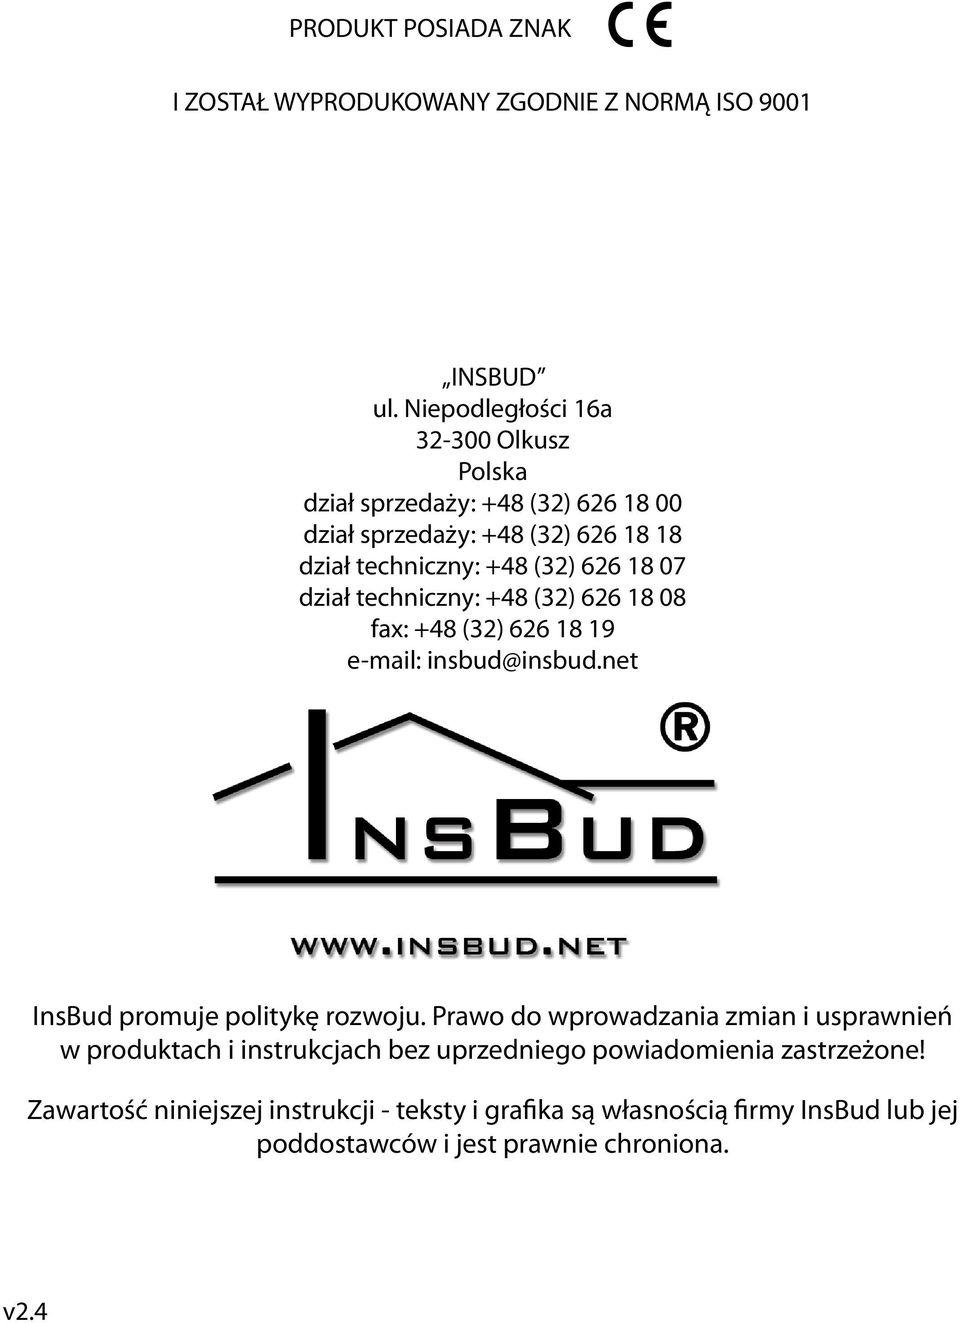 07 dział techniczny: +48 (32) 626 18 08 fax: +48 (32) 626 18 19 e-mail: insbud@insbud.net nsbud promuje politykę rozwoju.